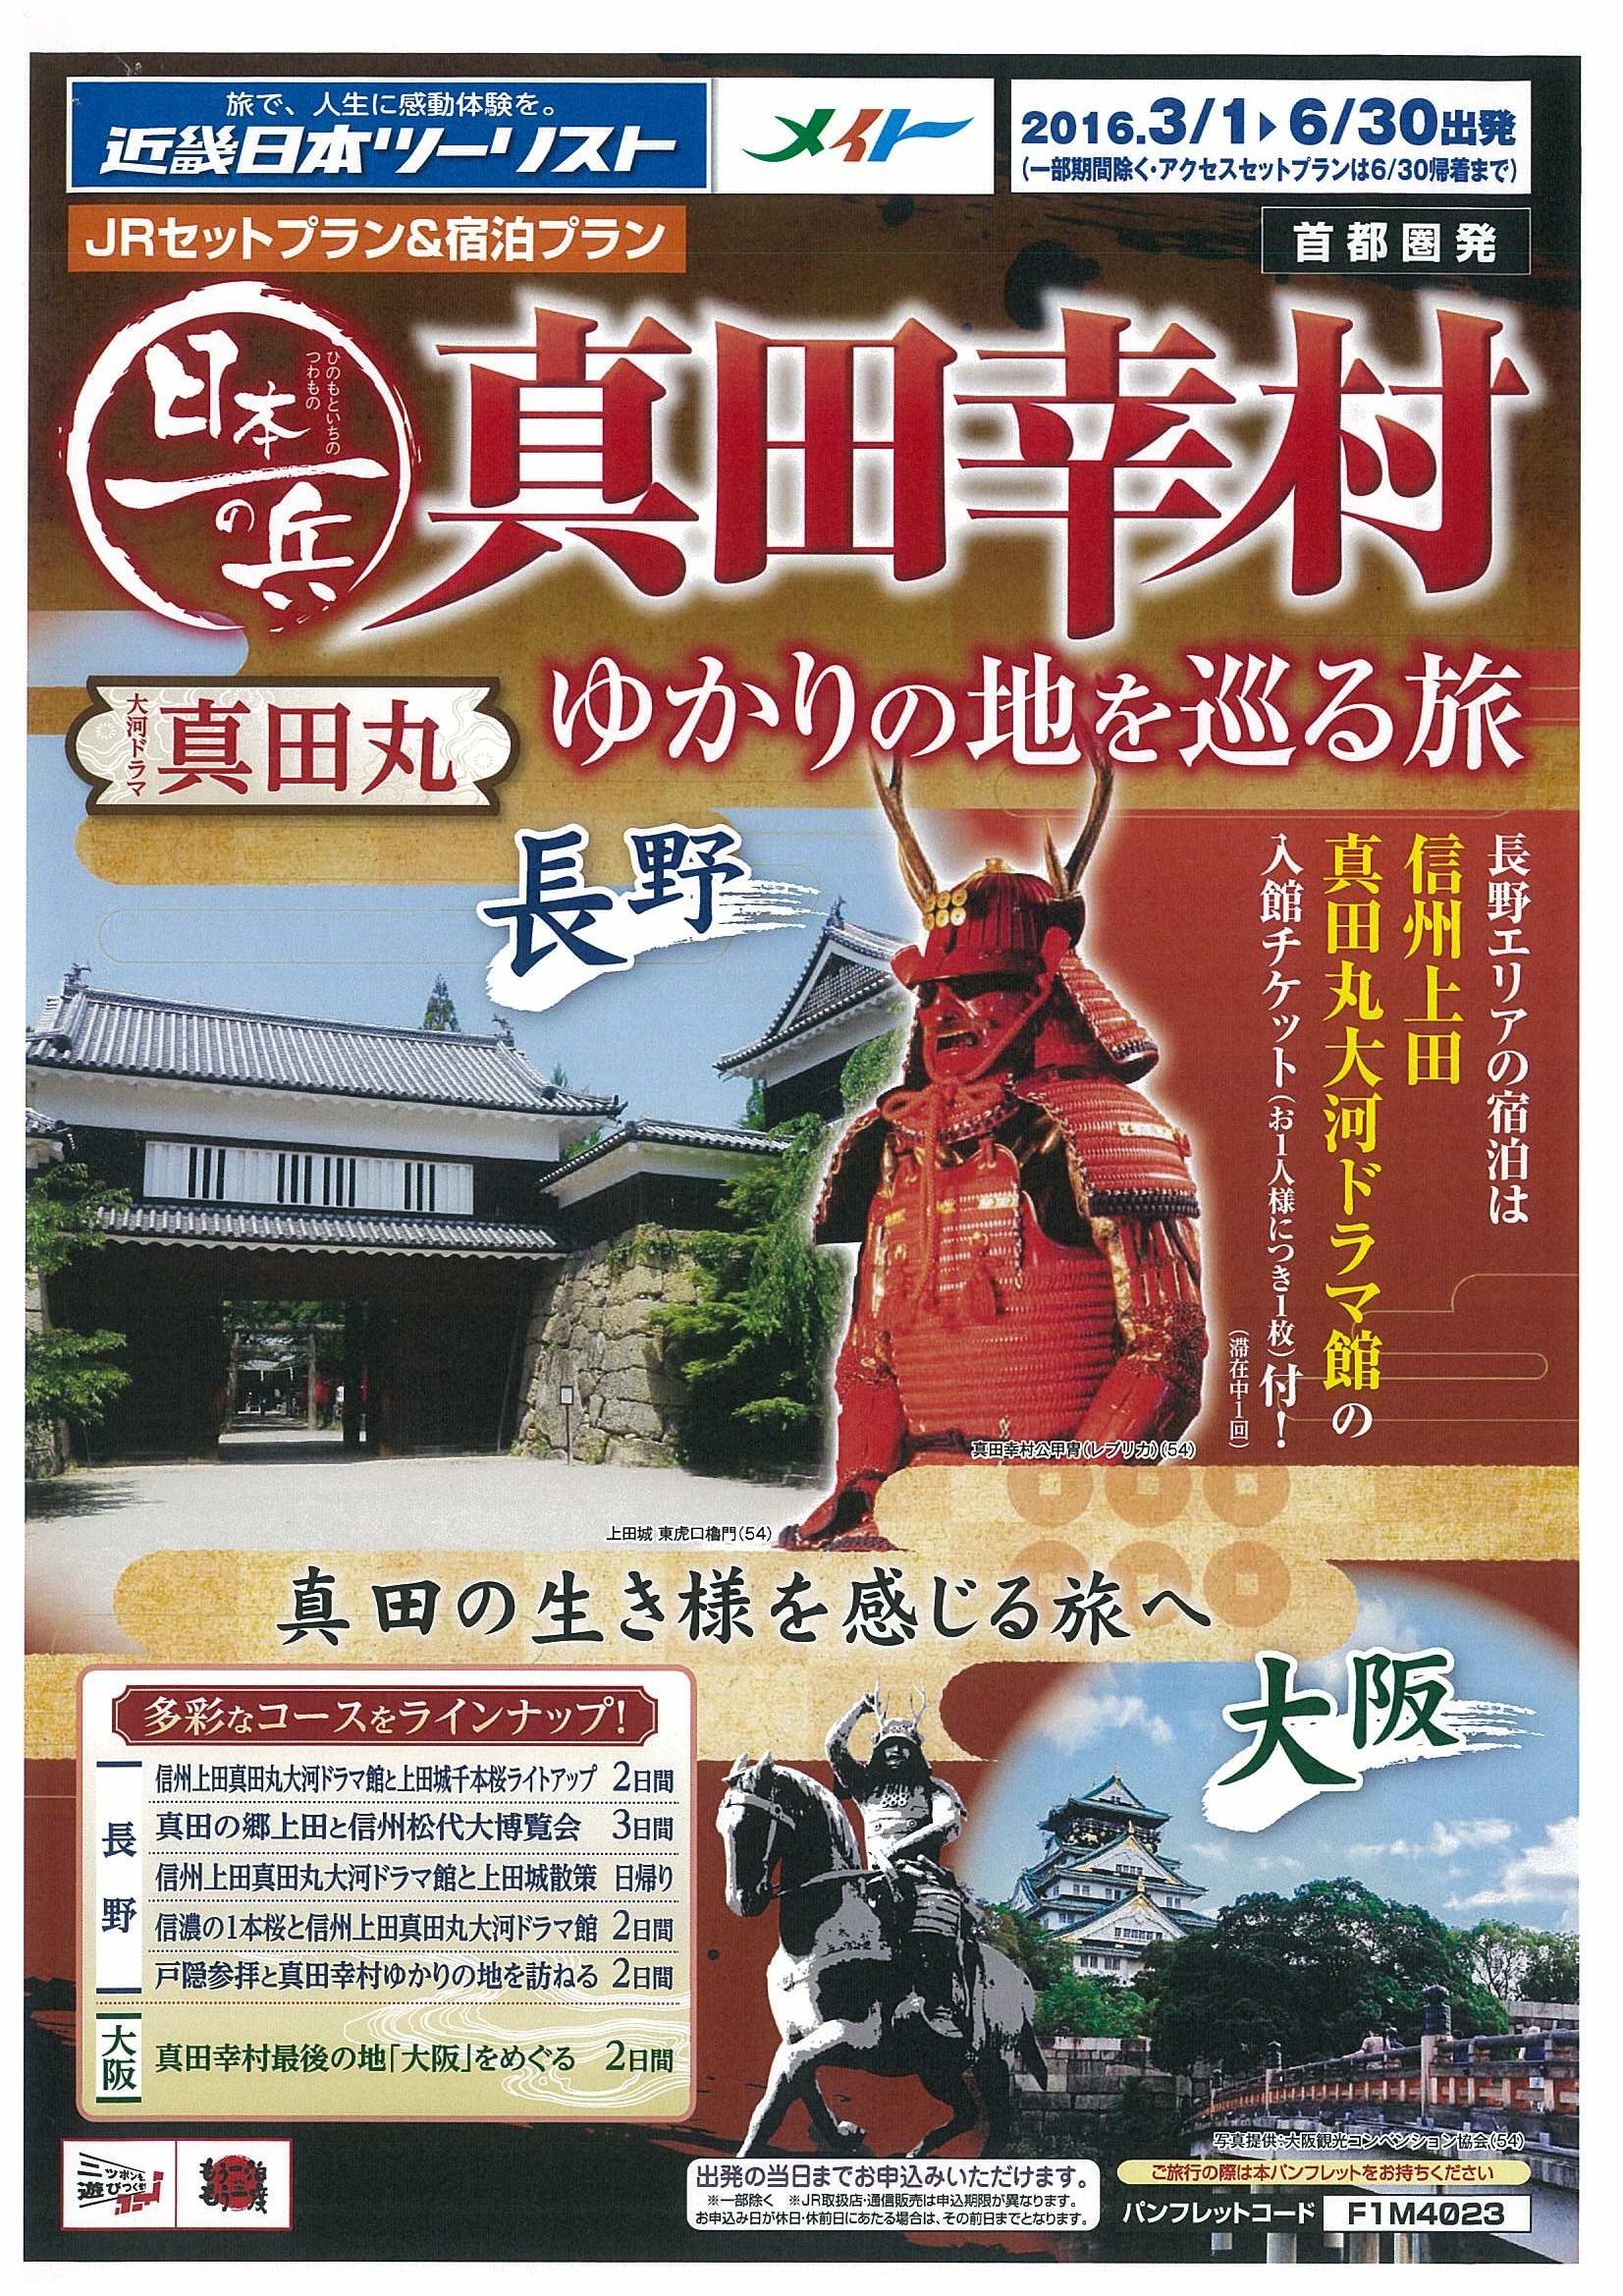 大河ドラマ 真田丸 で話題の地を訪ねる旅 真田 幸村ゆかりの地を巡る旅 2 17発売 ｋｎｔ ｃｔ ｈｄのプレスリリース